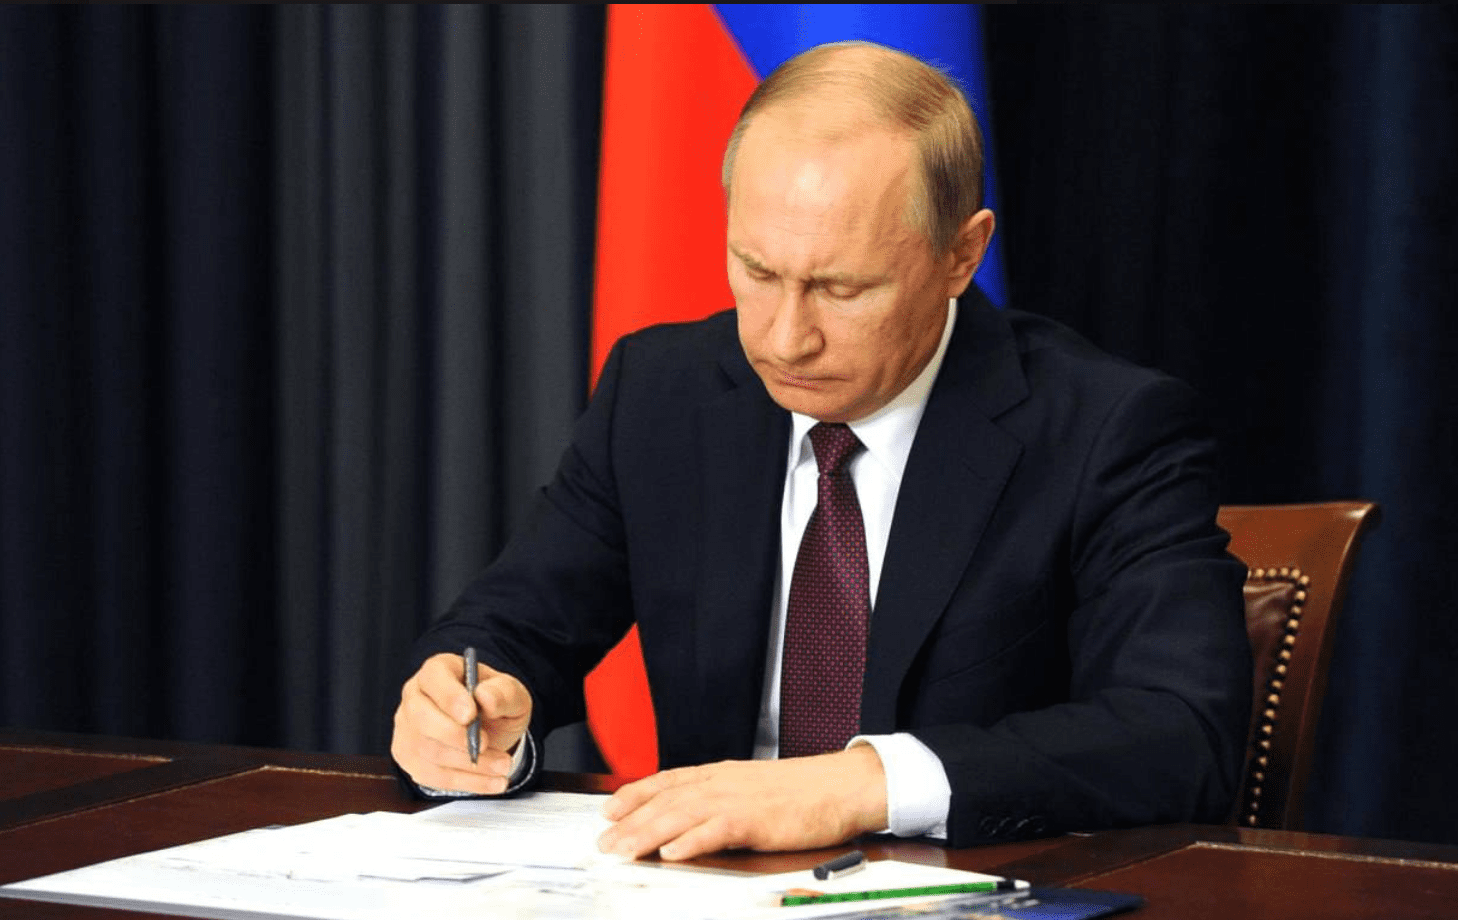 Putin denuncia manovre dei 'nemici' per destabilizzare la Russia dall'interno